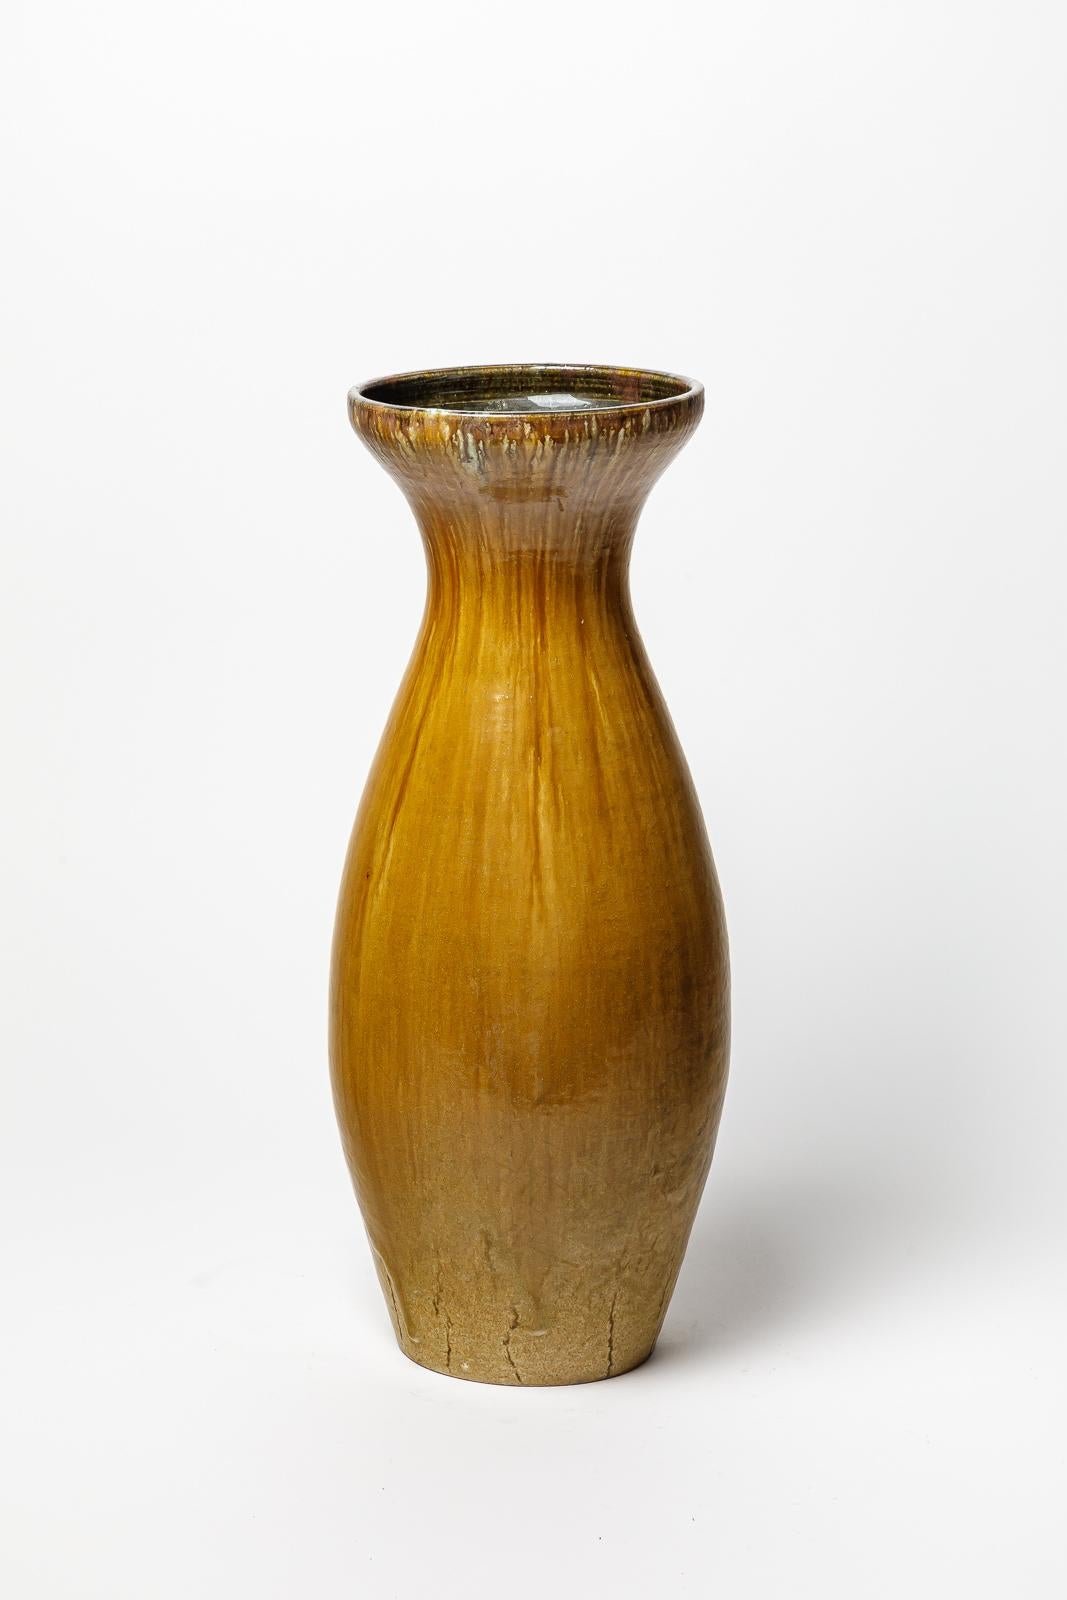 Vase en grès émaillé ocre d'Accolay.
Signature de l'artiste sous la base. Circa 1960-1970. 
H : 17.7' x 6.3' pouces.